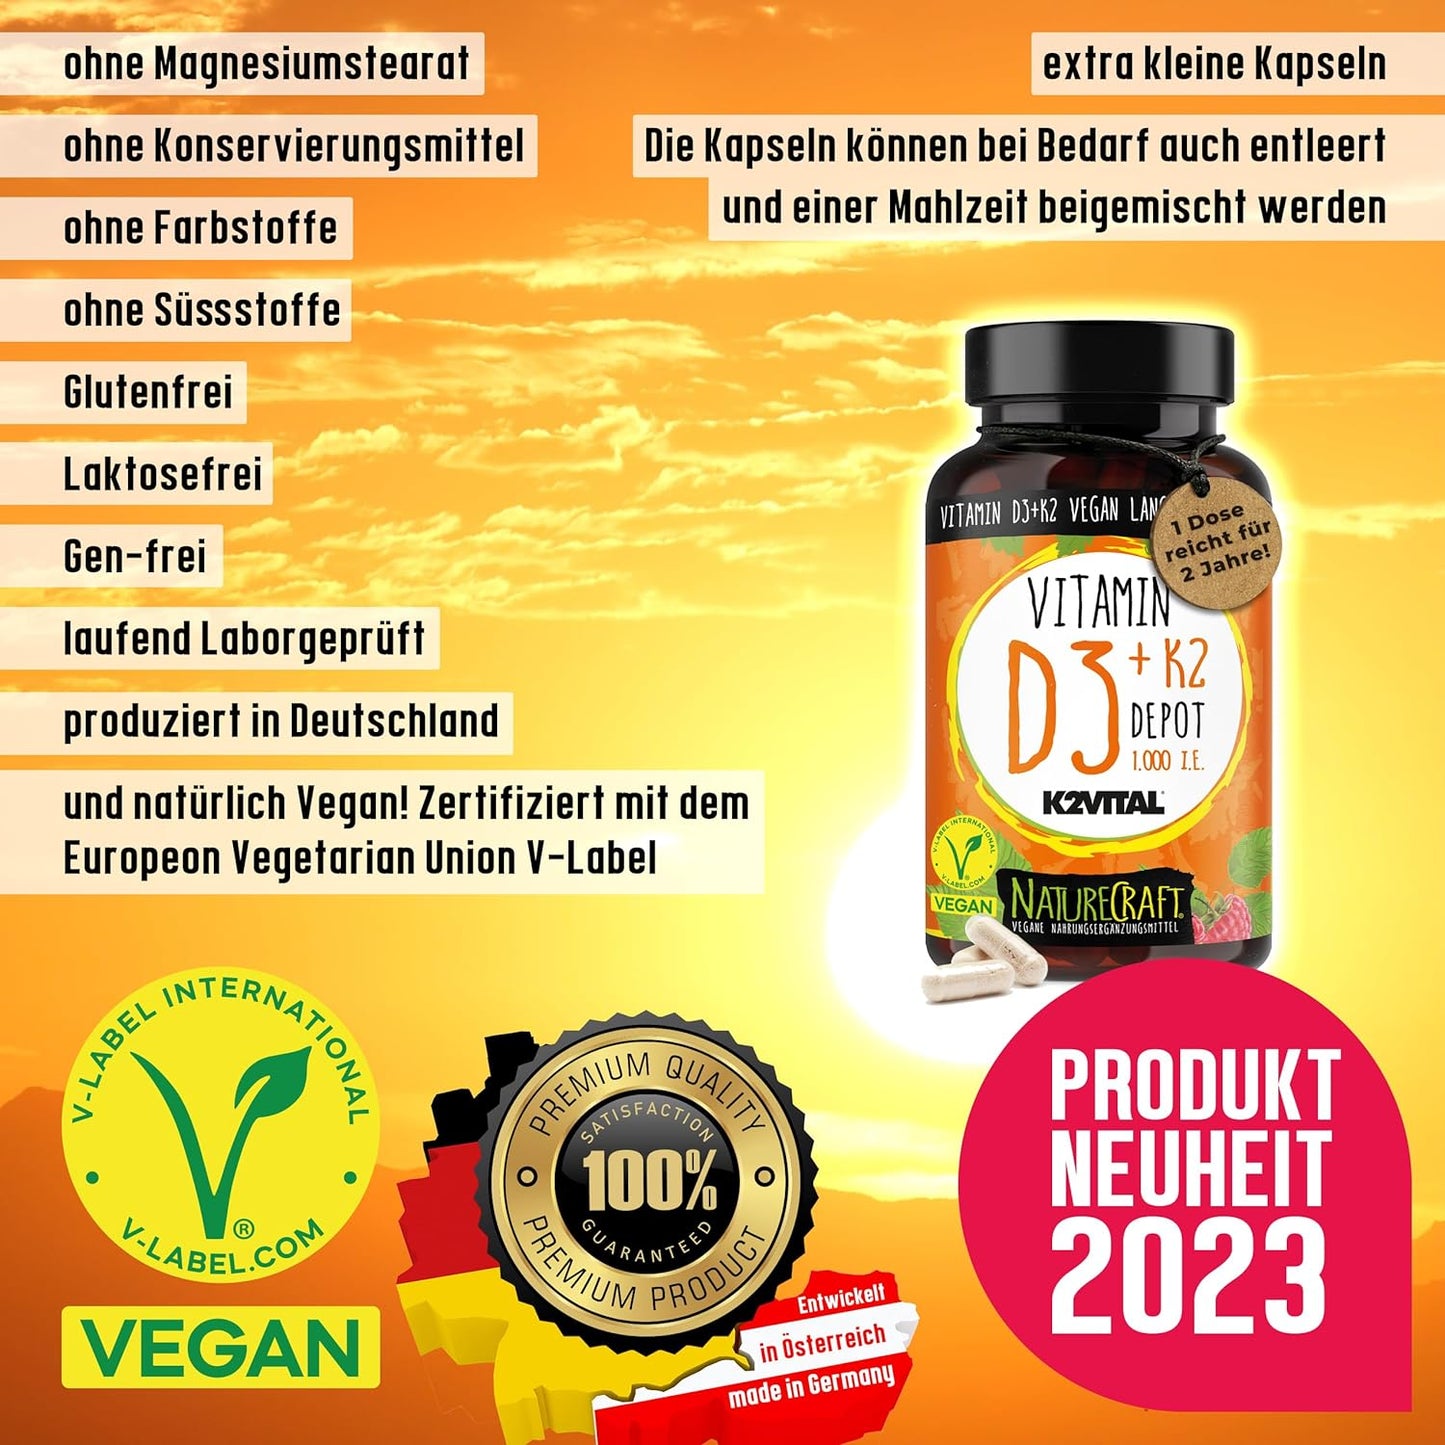 Vitamin D3 + K2 Depot mit 1000 I.E. pro Tagesdosis - Einnahme alle 7 bis 21 Tage, 1-3 Kapseln Vitamin D + K2 Vital MK7 All Trans, vegan, hochdosiert - 1 Dose (100 Kapseln) reicht für 2 Jahre